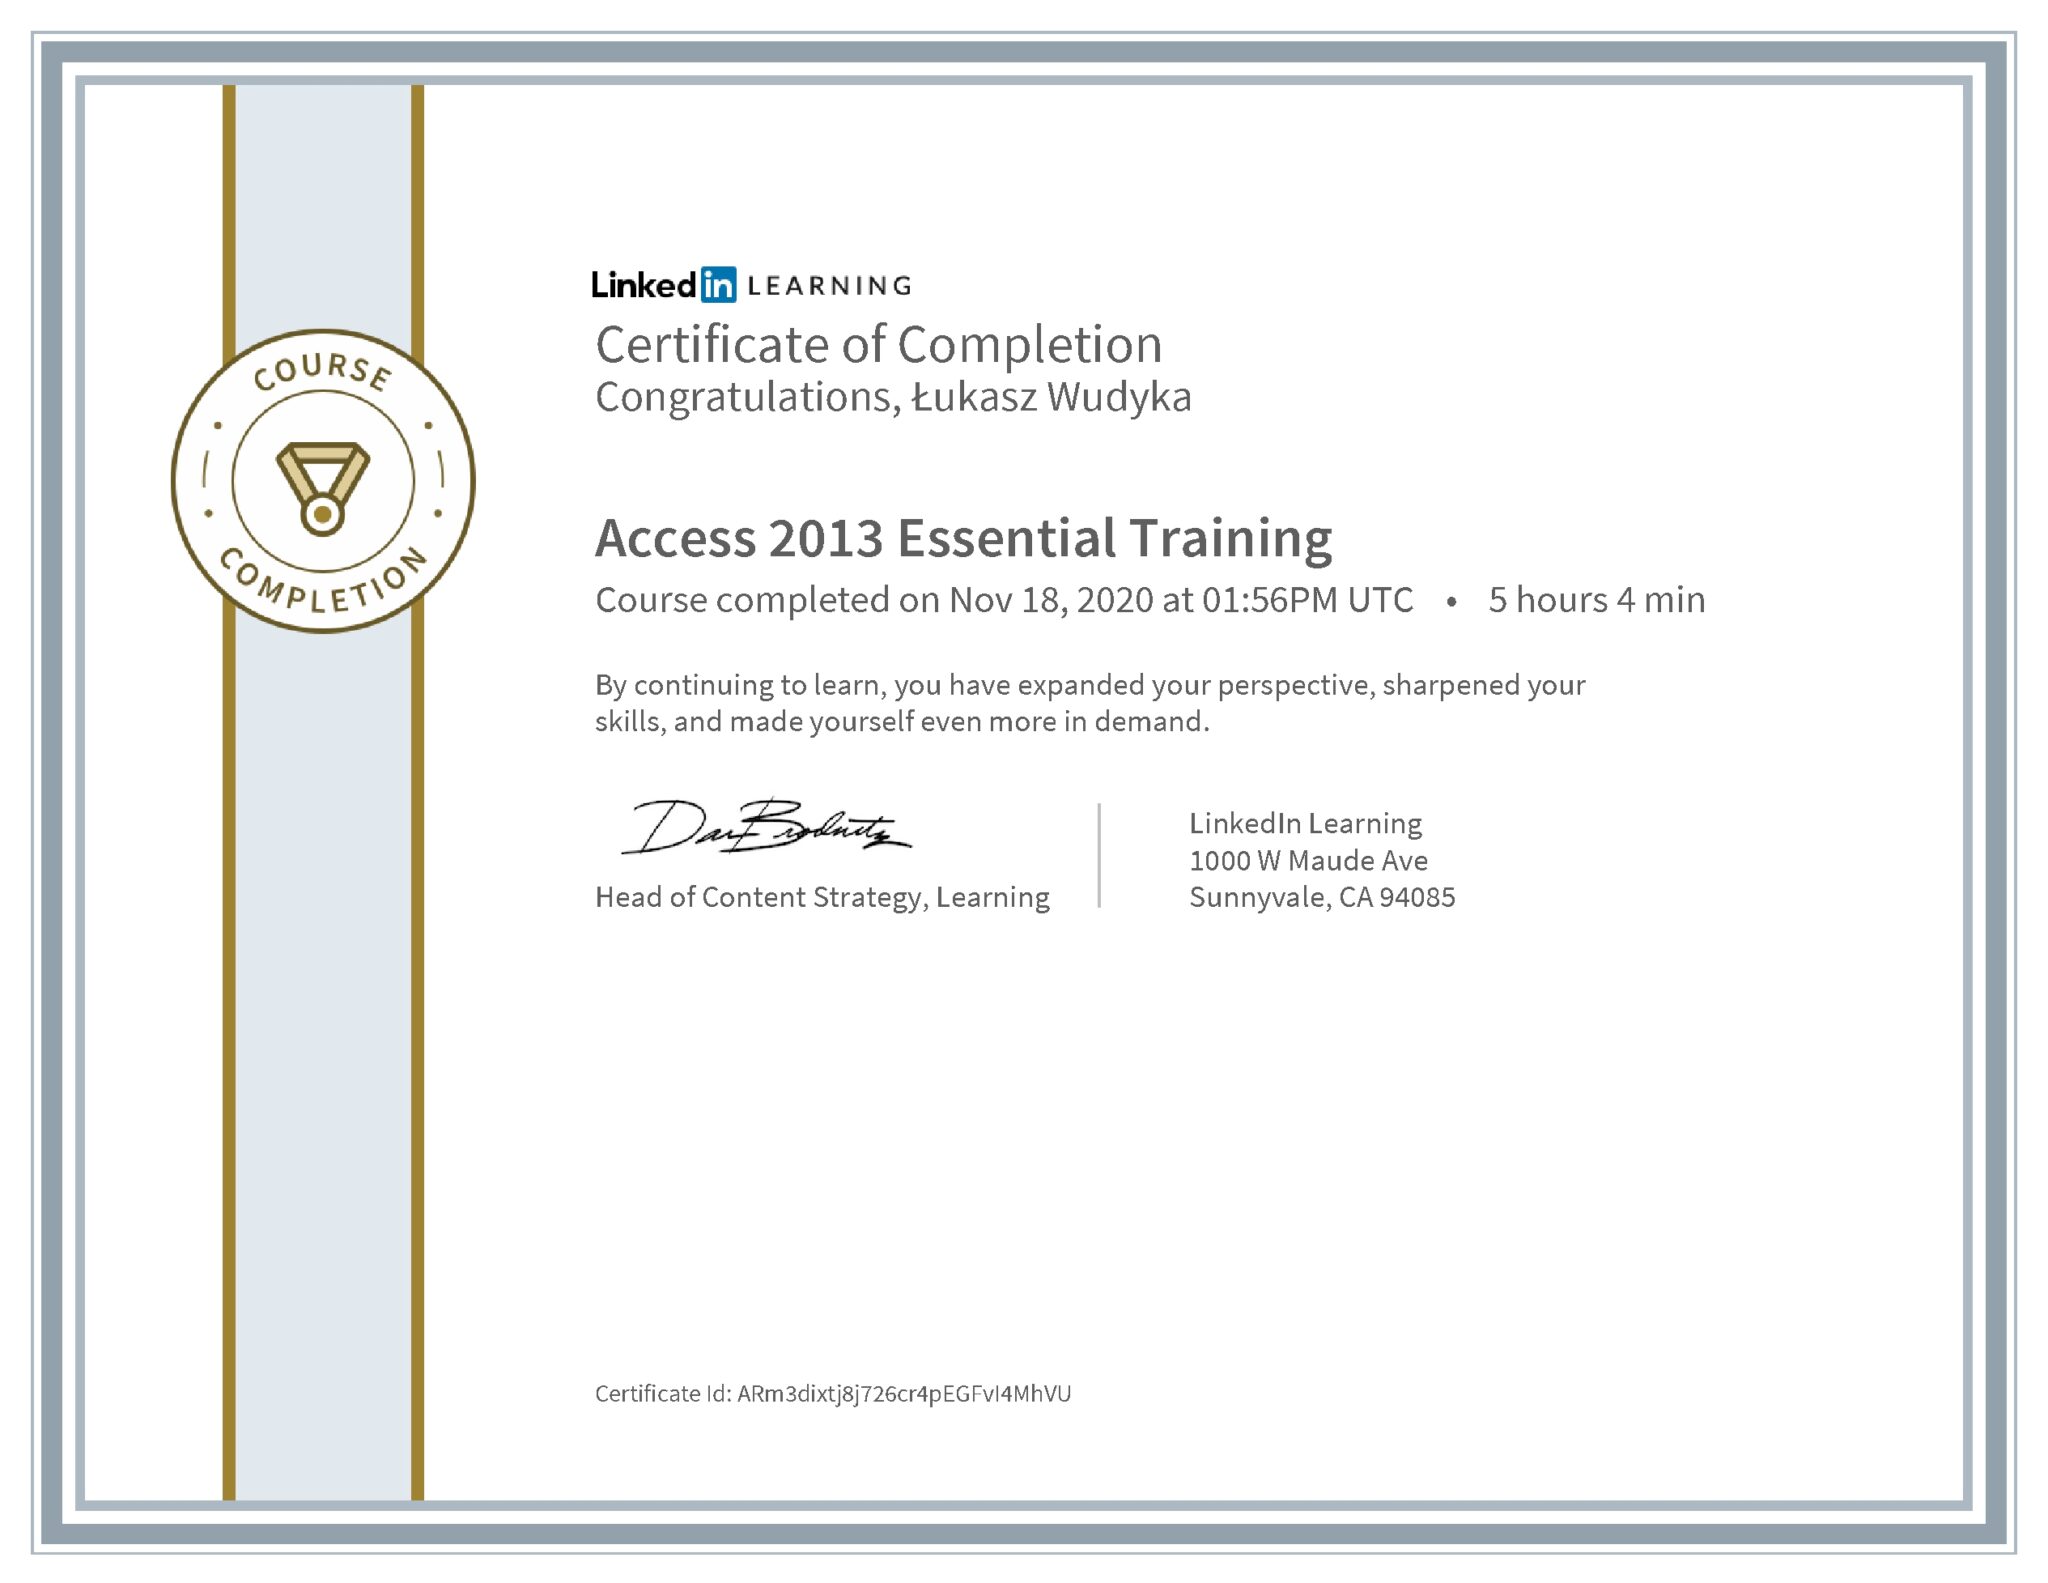 Łukasz Wudyka certyfikat LinkedIn Access 2013 Essential Training